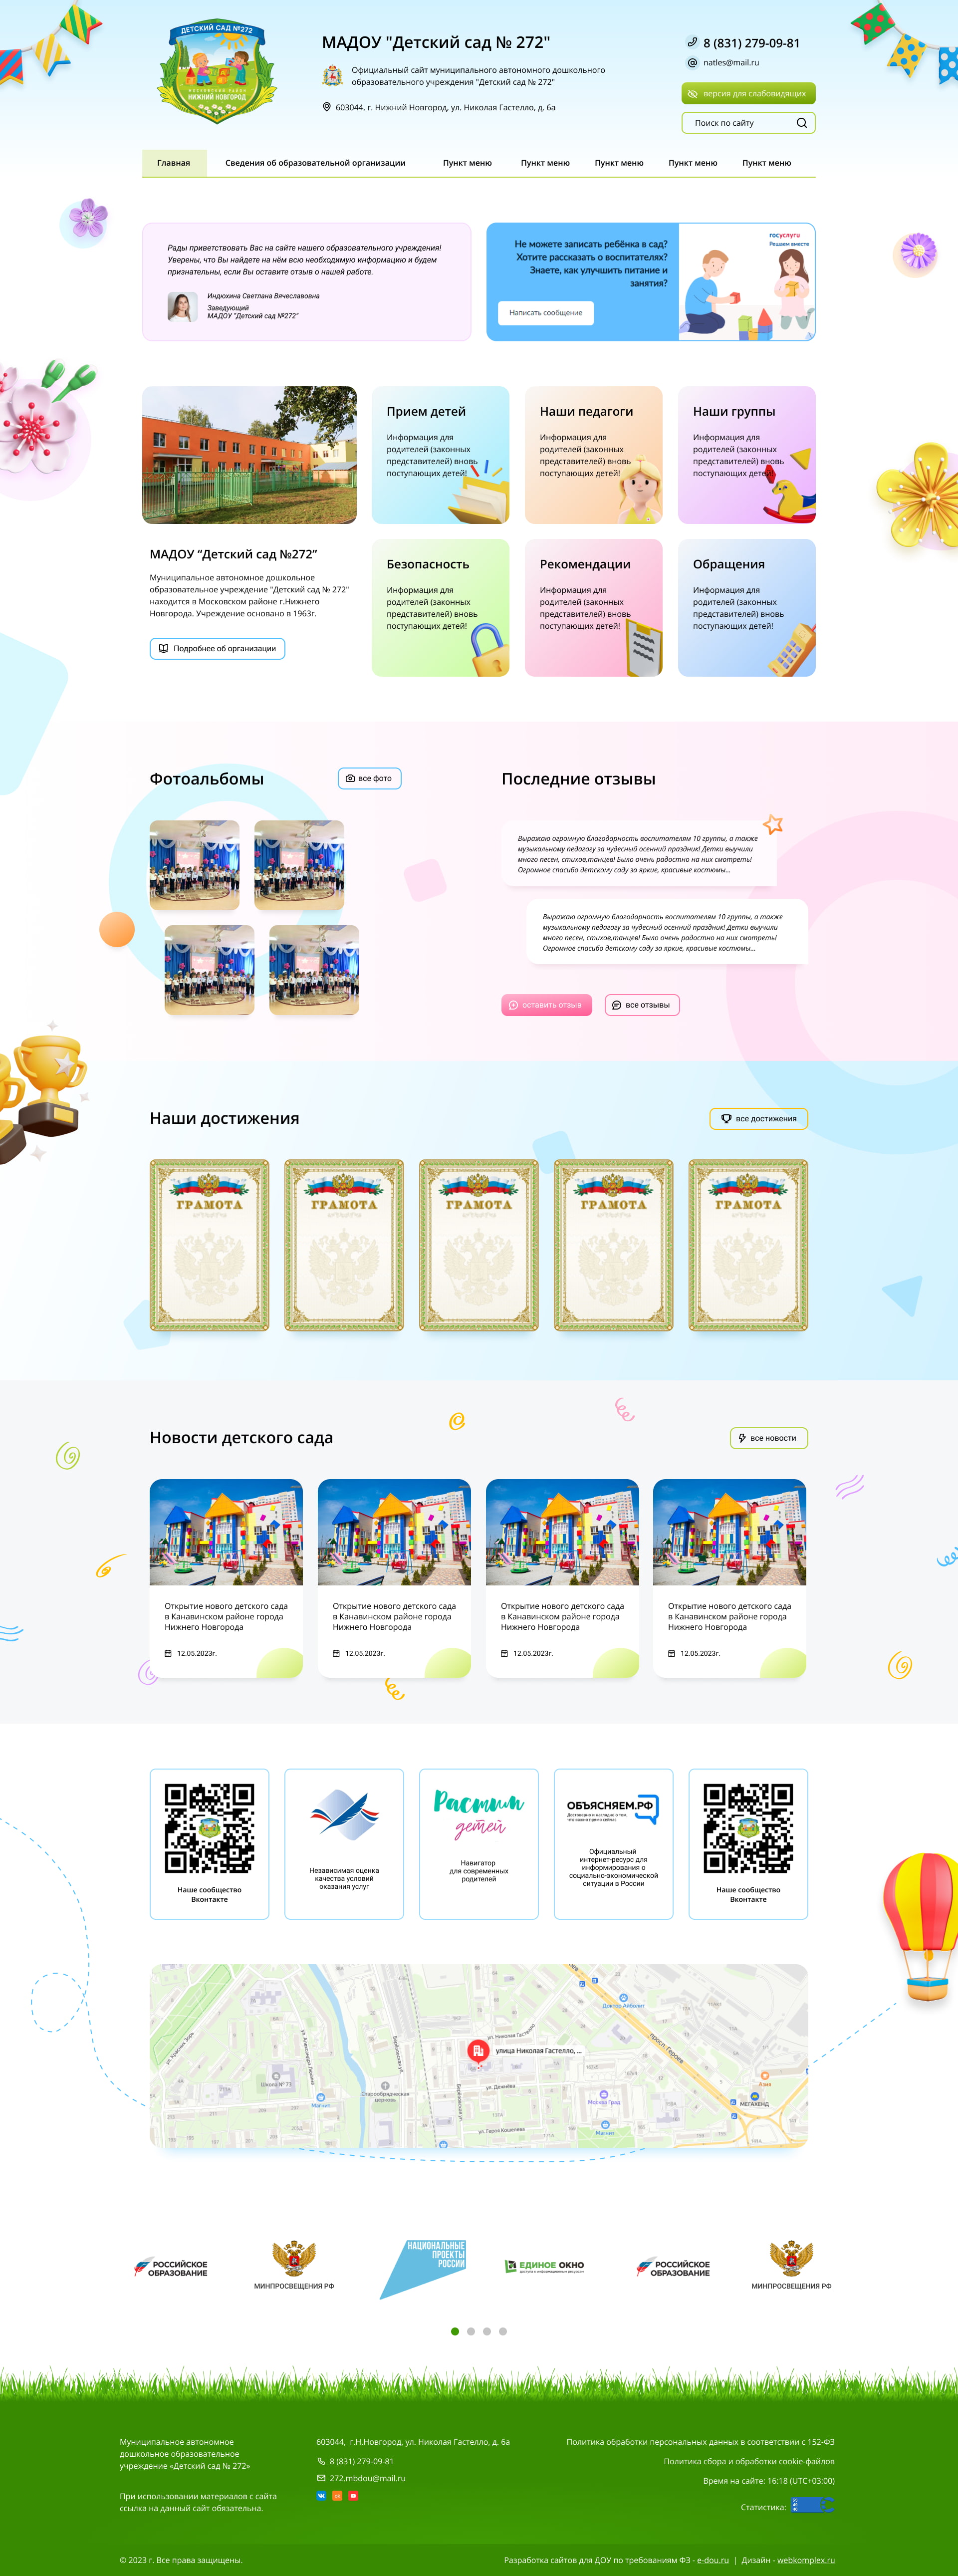 Макет сайта детского сада №272 с дизайном «Premium»